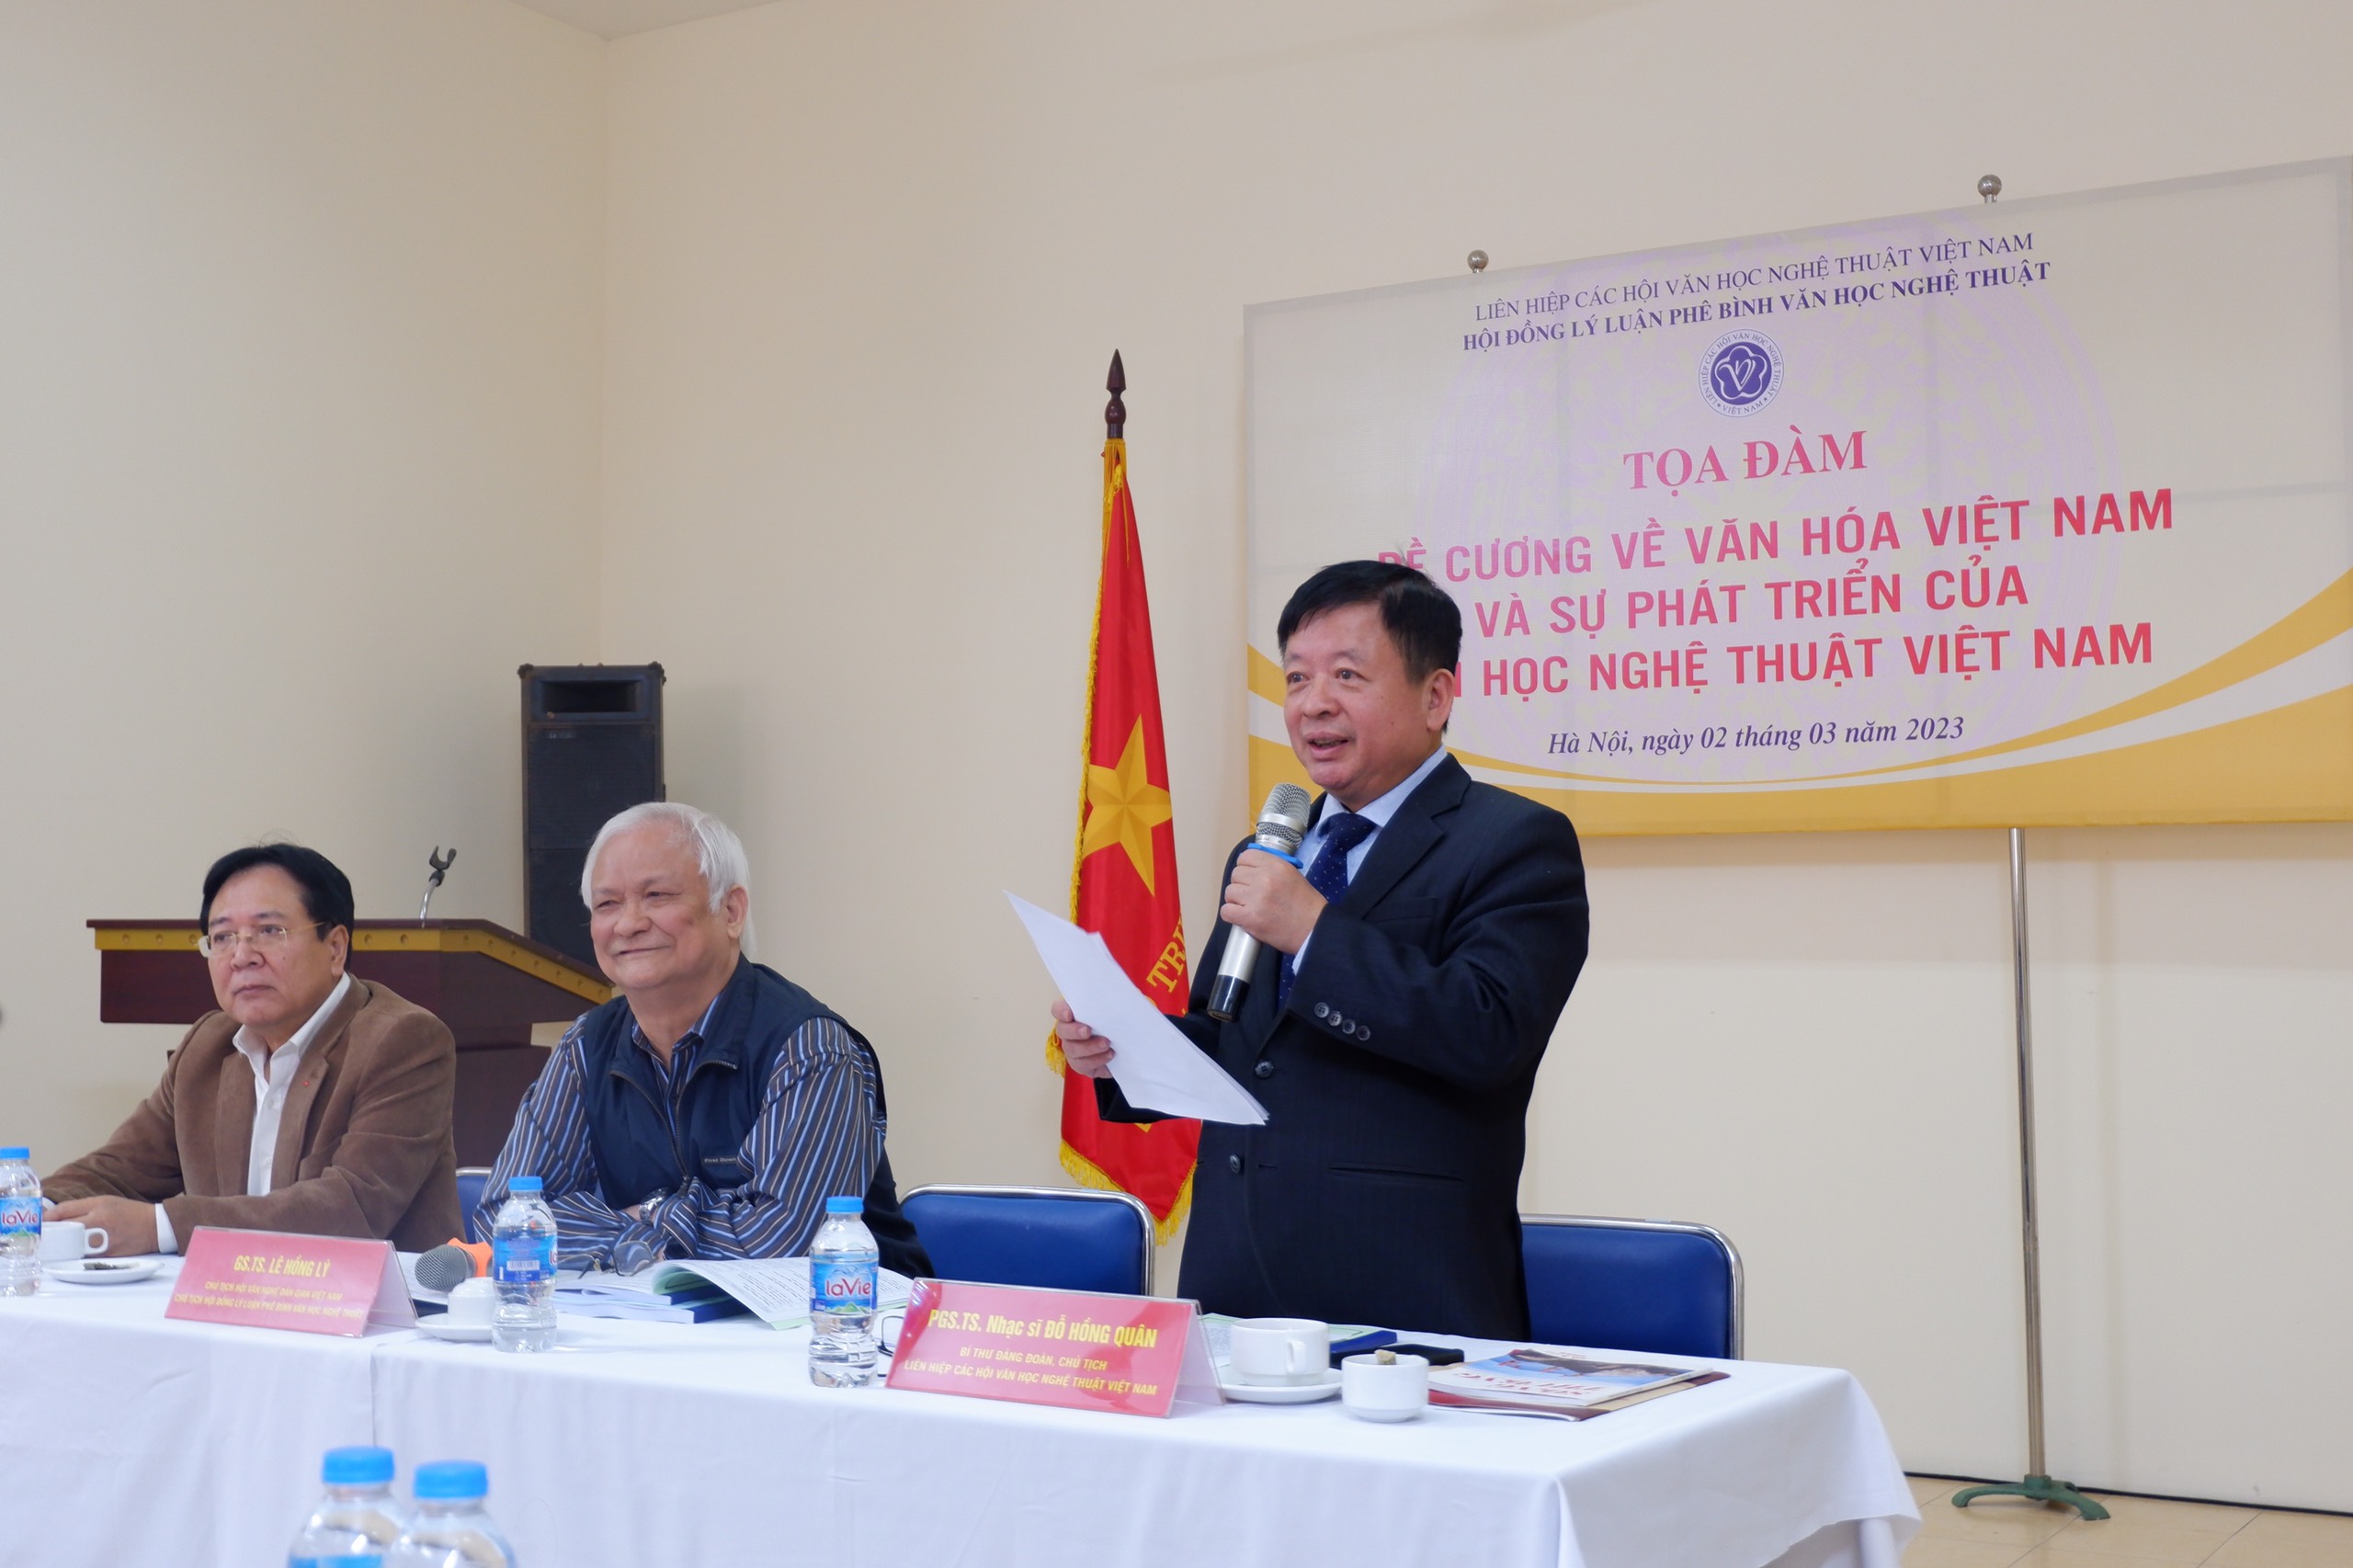 Đề cương về văn hóa Việt Nam: Tiền đề phát triển văn học nghệ thuật trong giai đoạn mới - 2